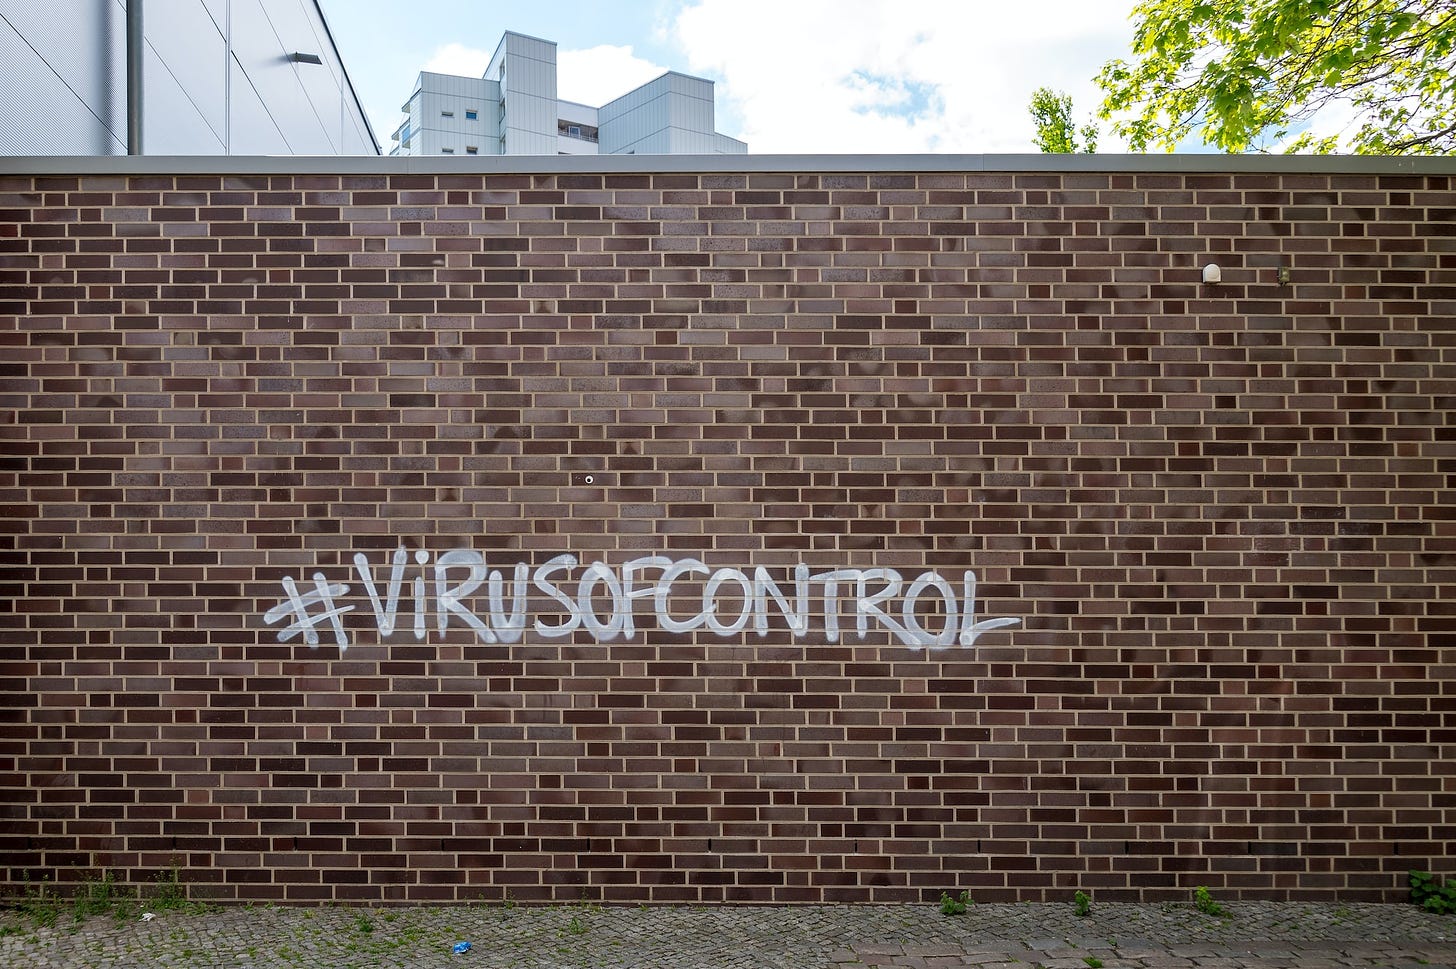 virus of control